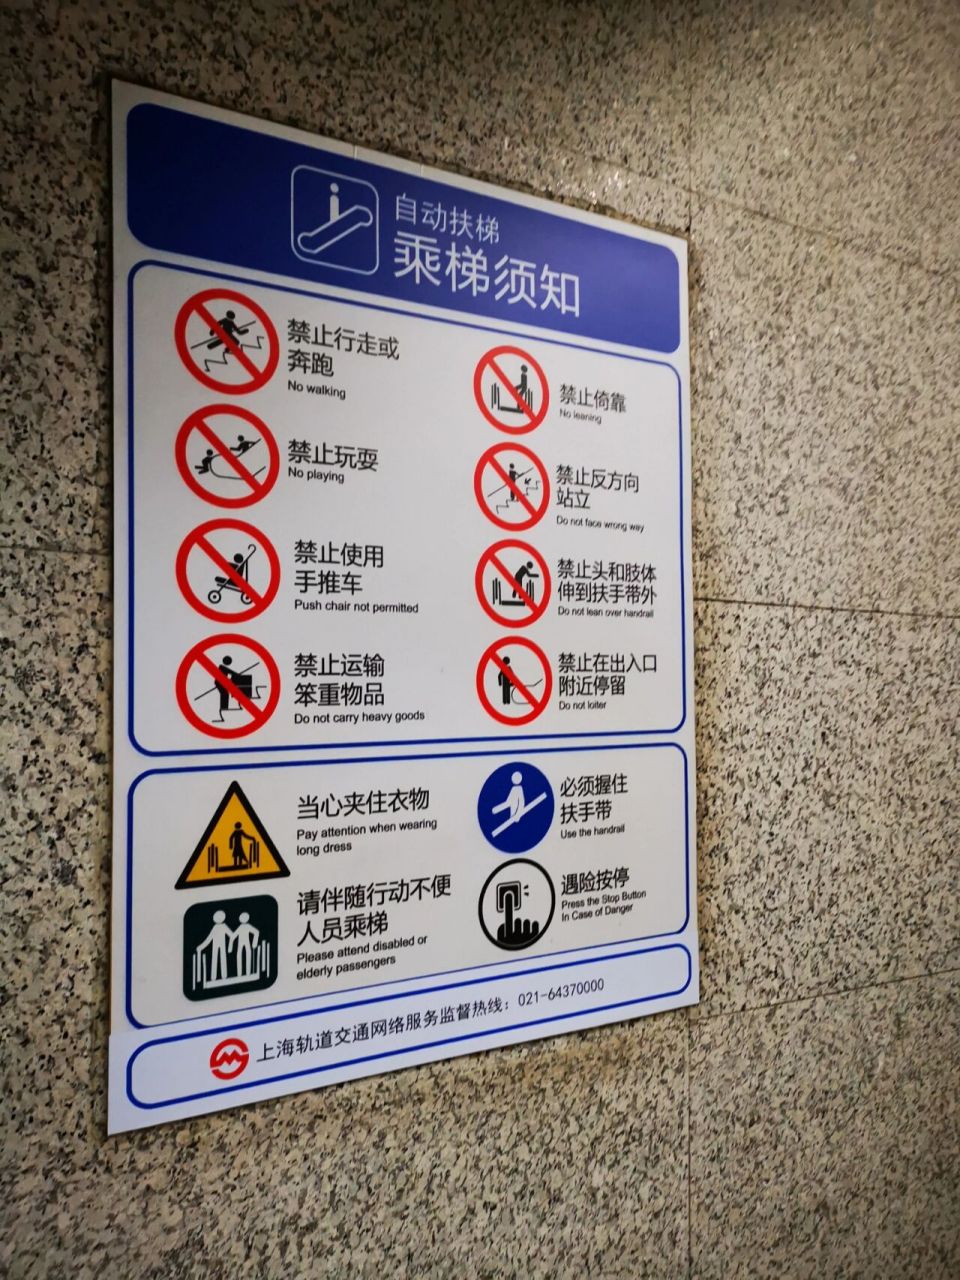 地铁自动扶梯禁行标志 在上海坐地铁那么久,今天才注意到自动扶梯禁行